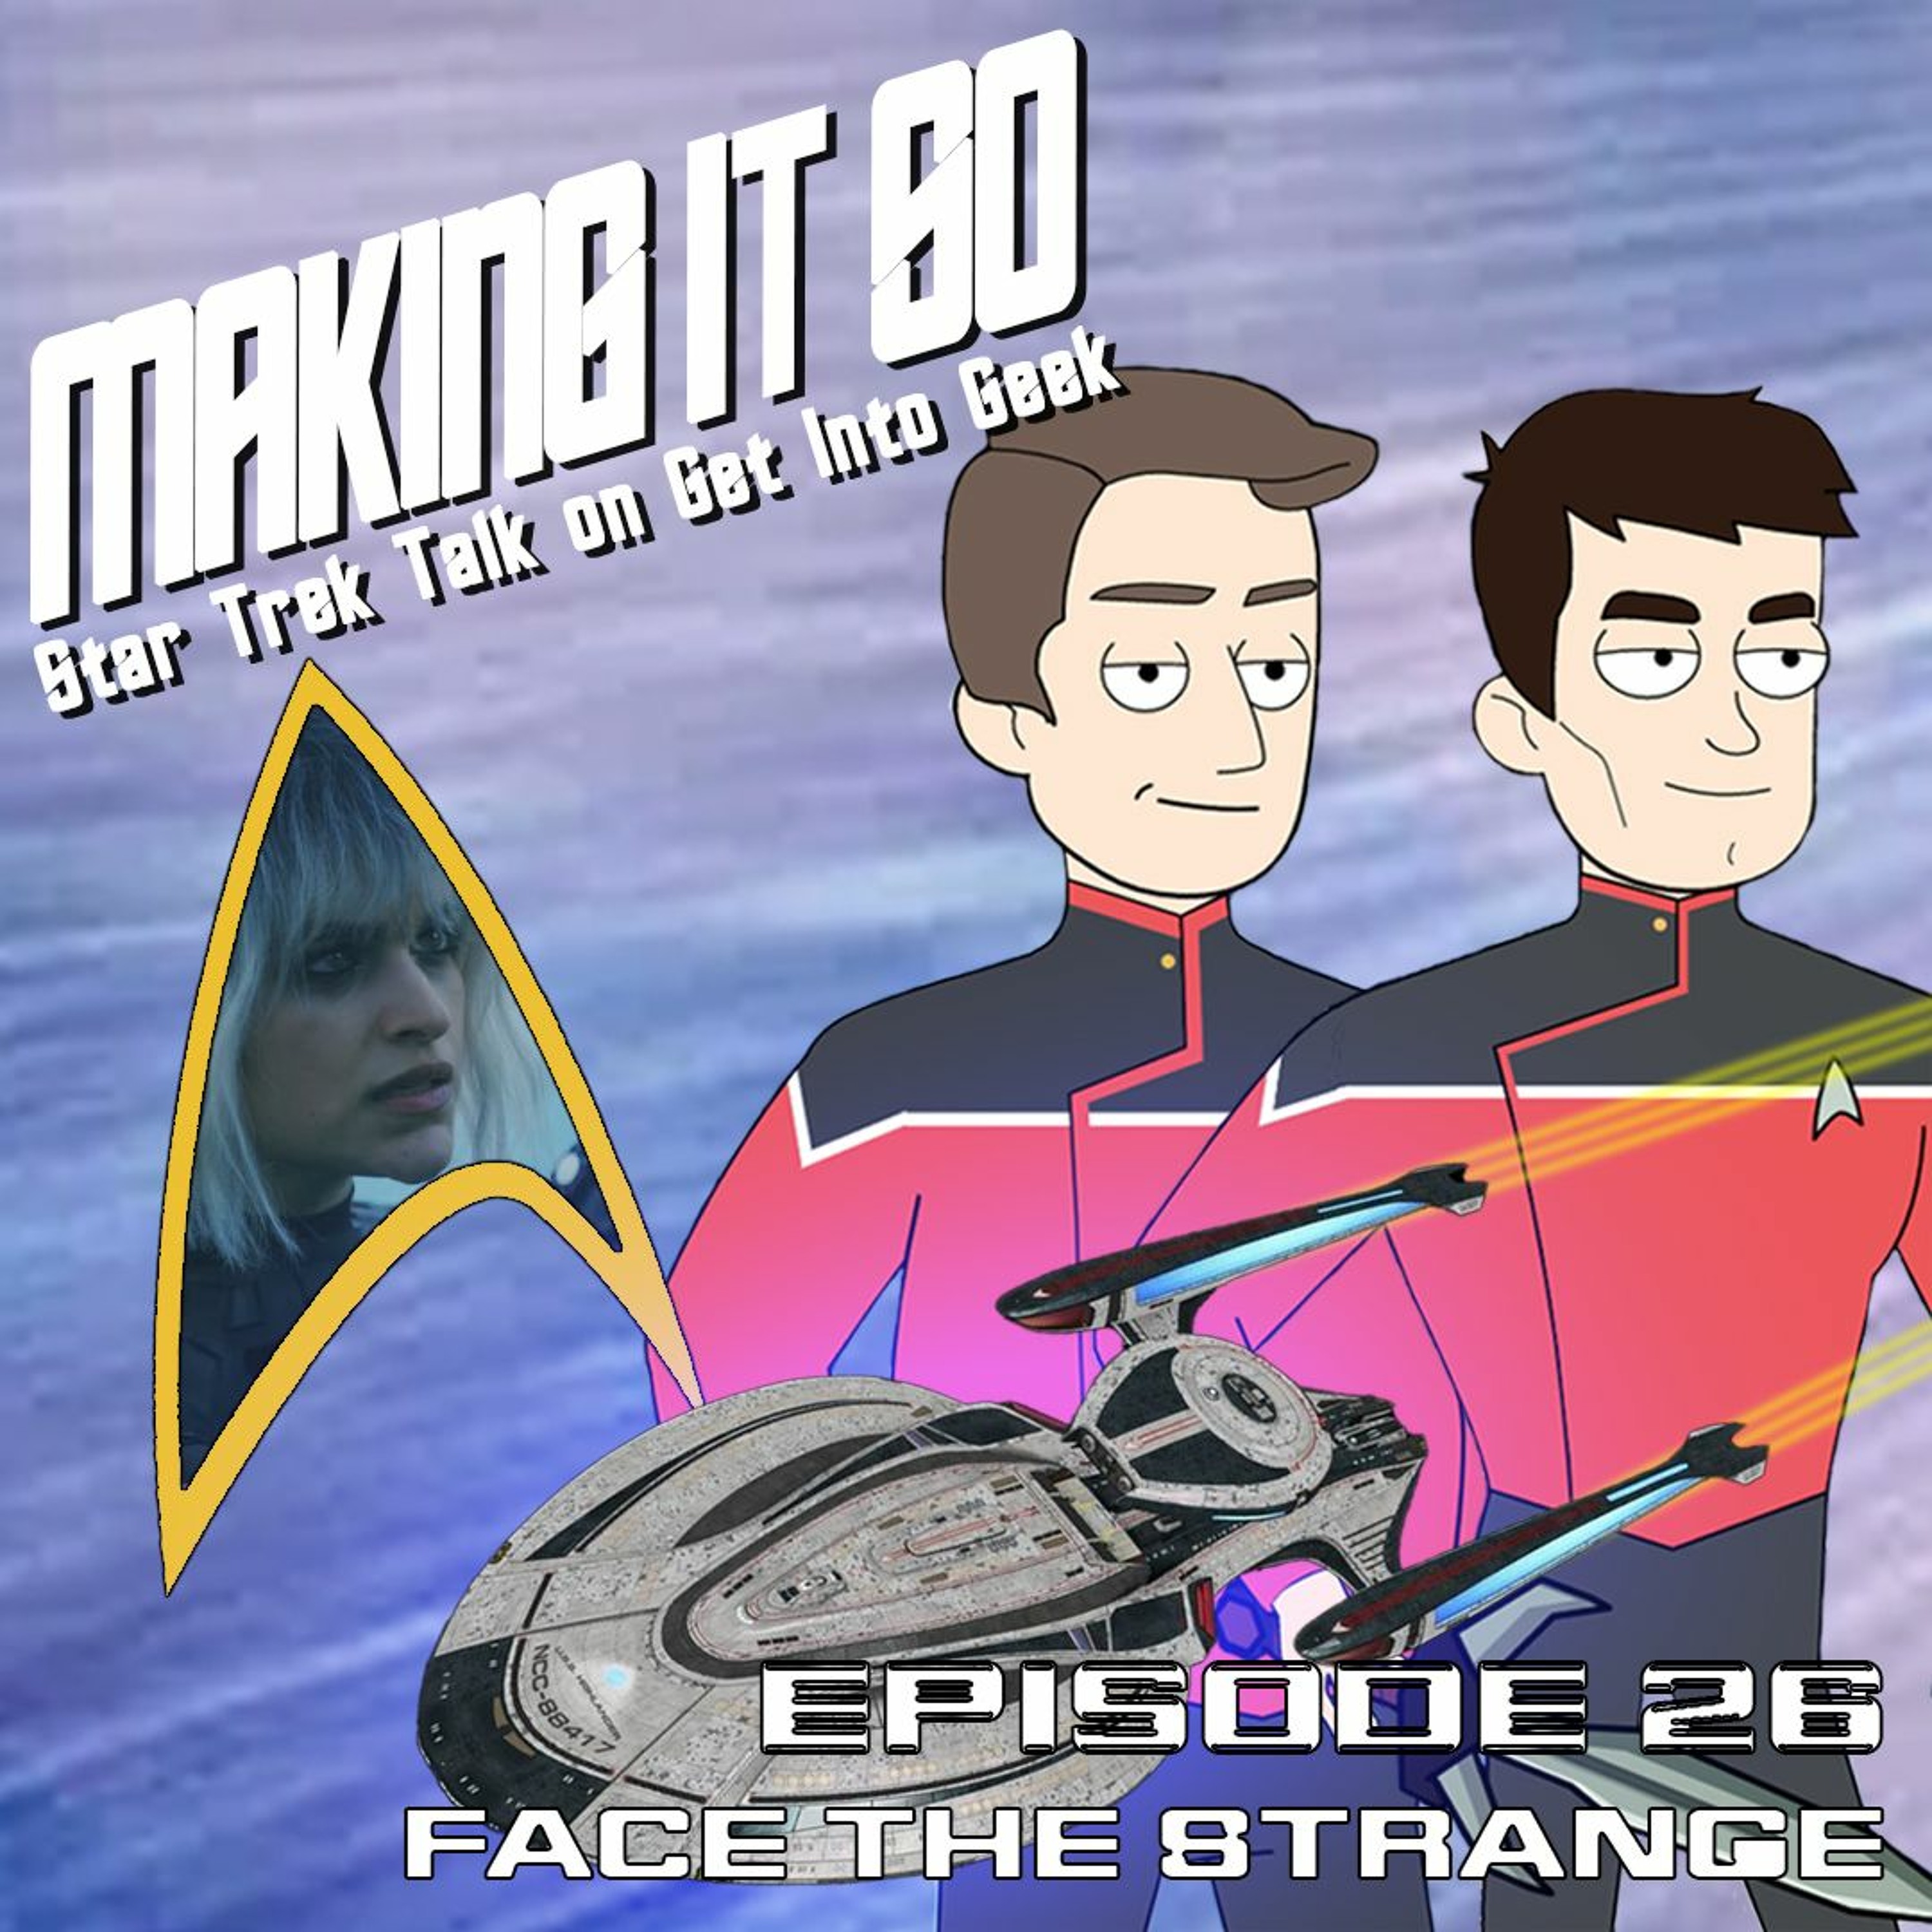 Face The Strange (Making It So - Star Trek Talk Episode 26)